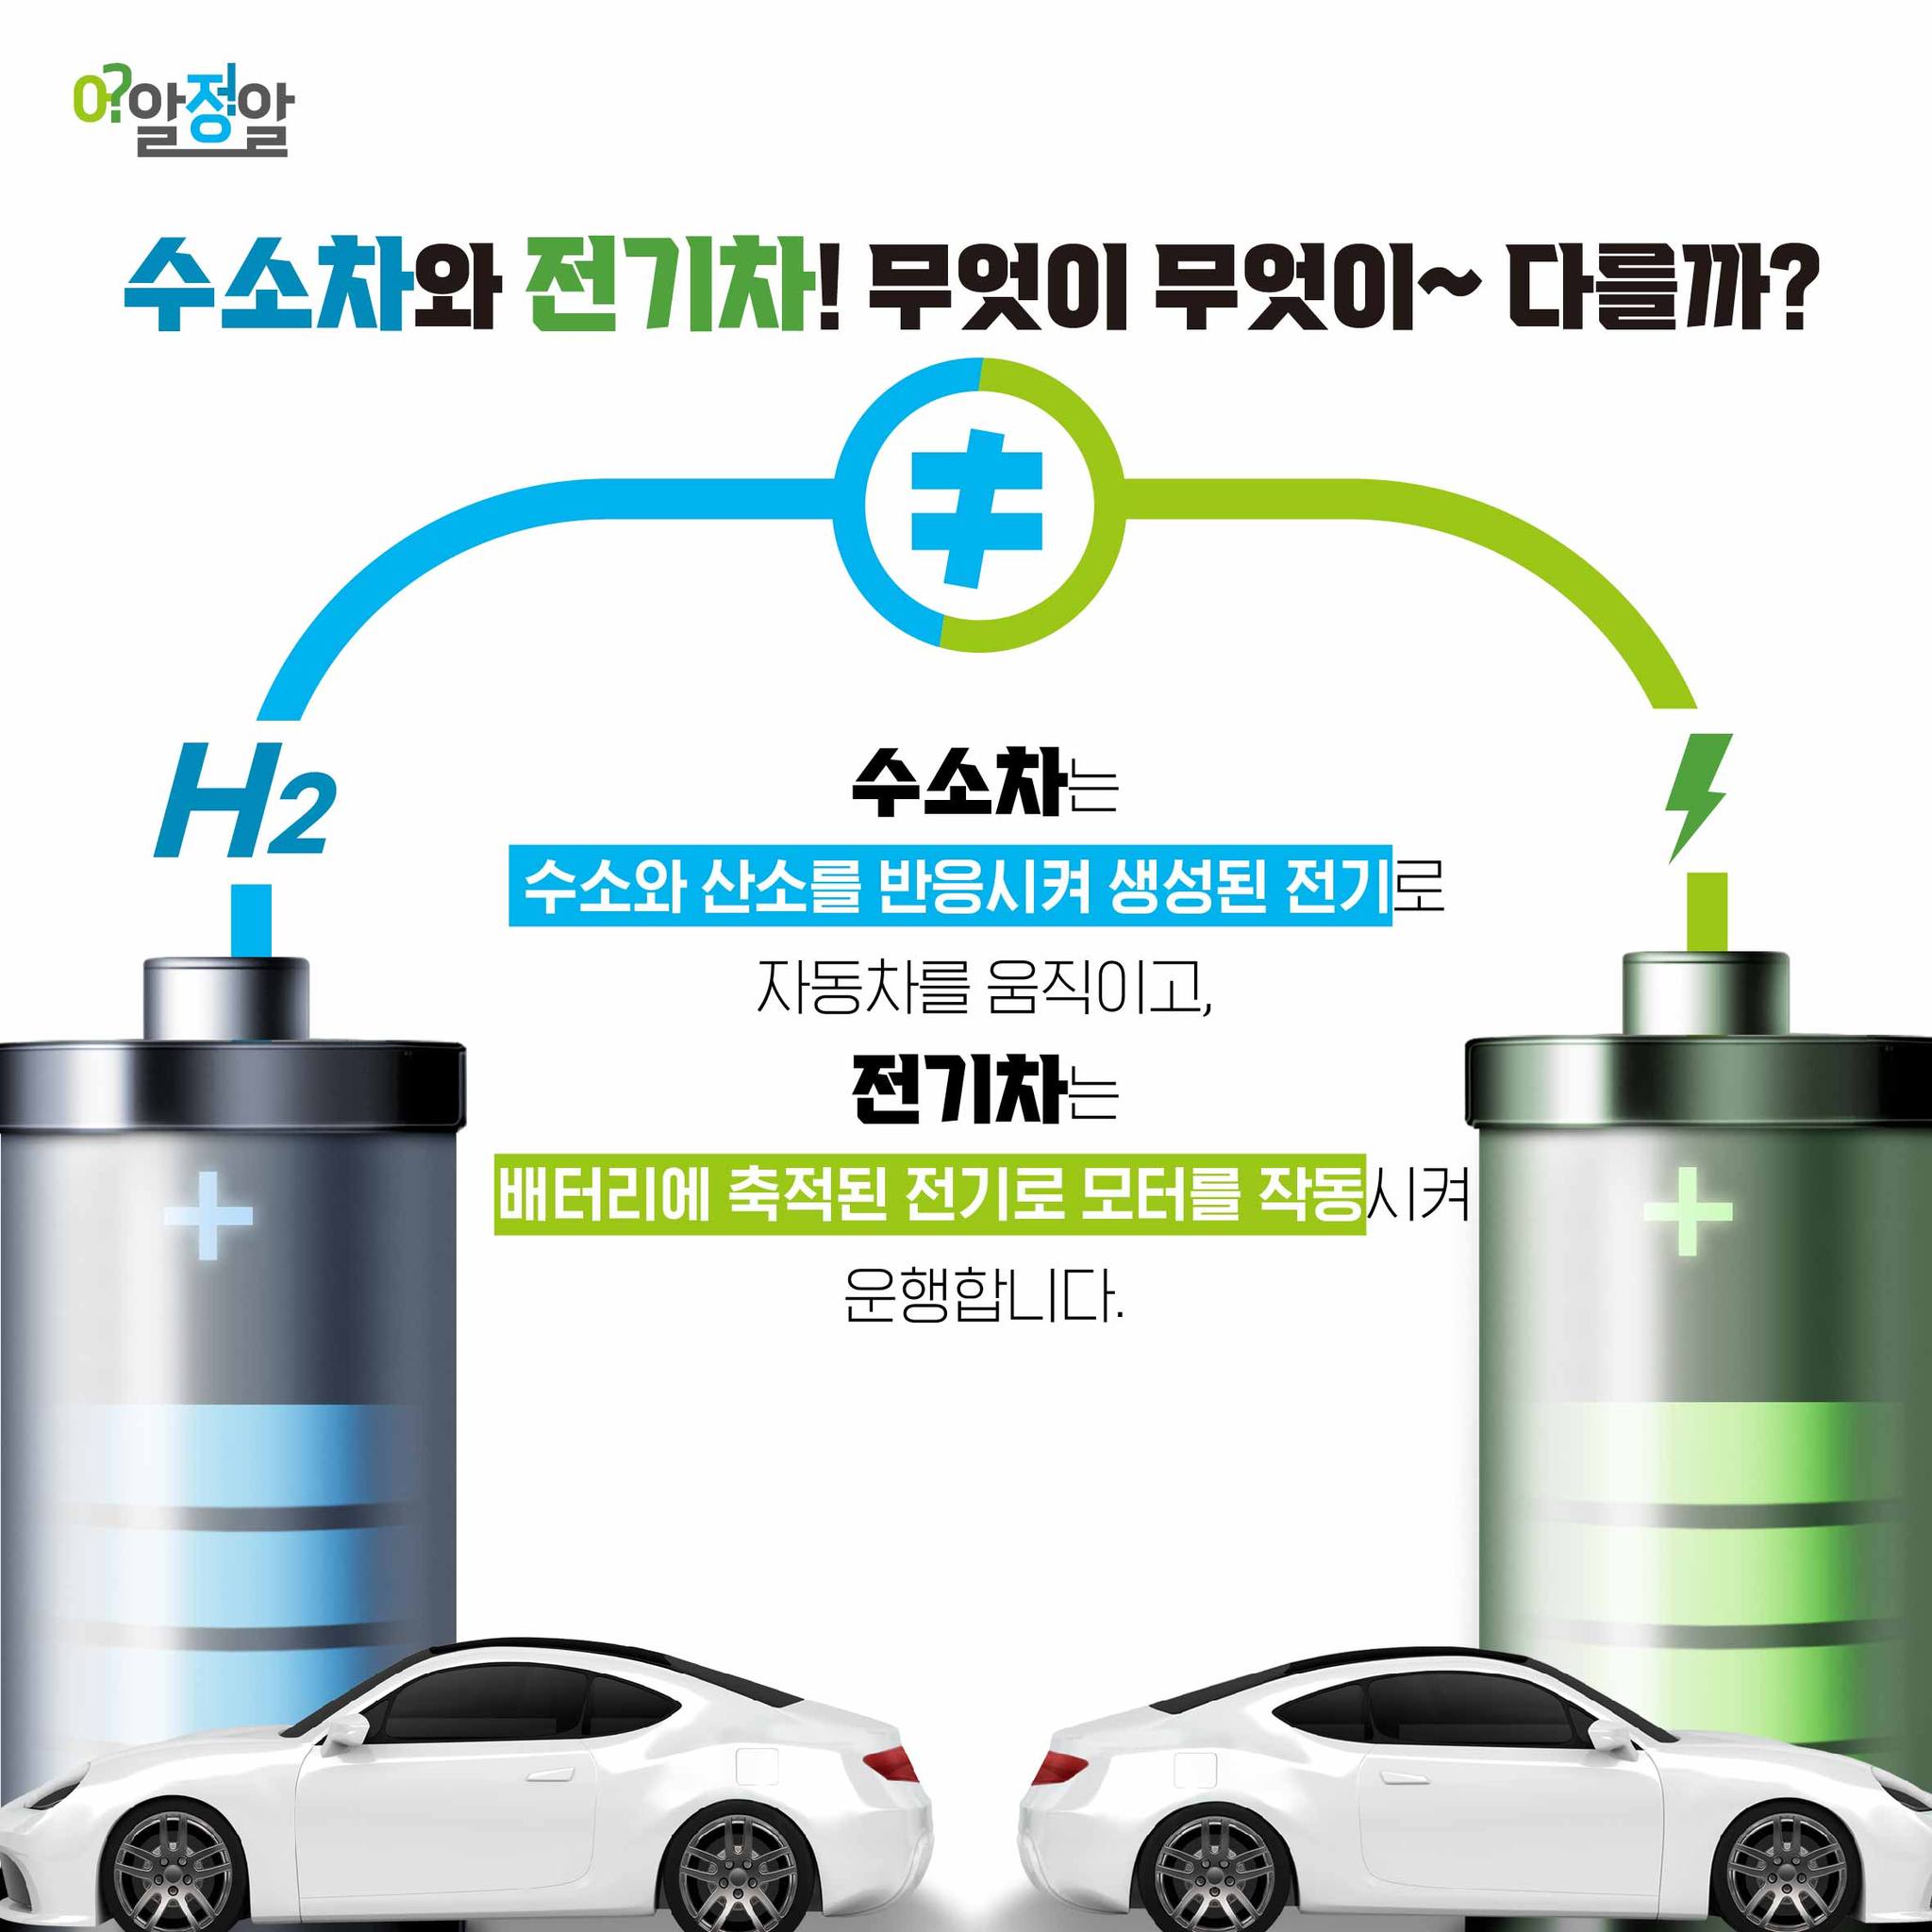 수소차는  수소와 산소를 반응시켜 생성된 전기로  자동차를 움직이고,  전기차는  배터리에 축적된 전기로 모터를 작동시켜  운행합니다.